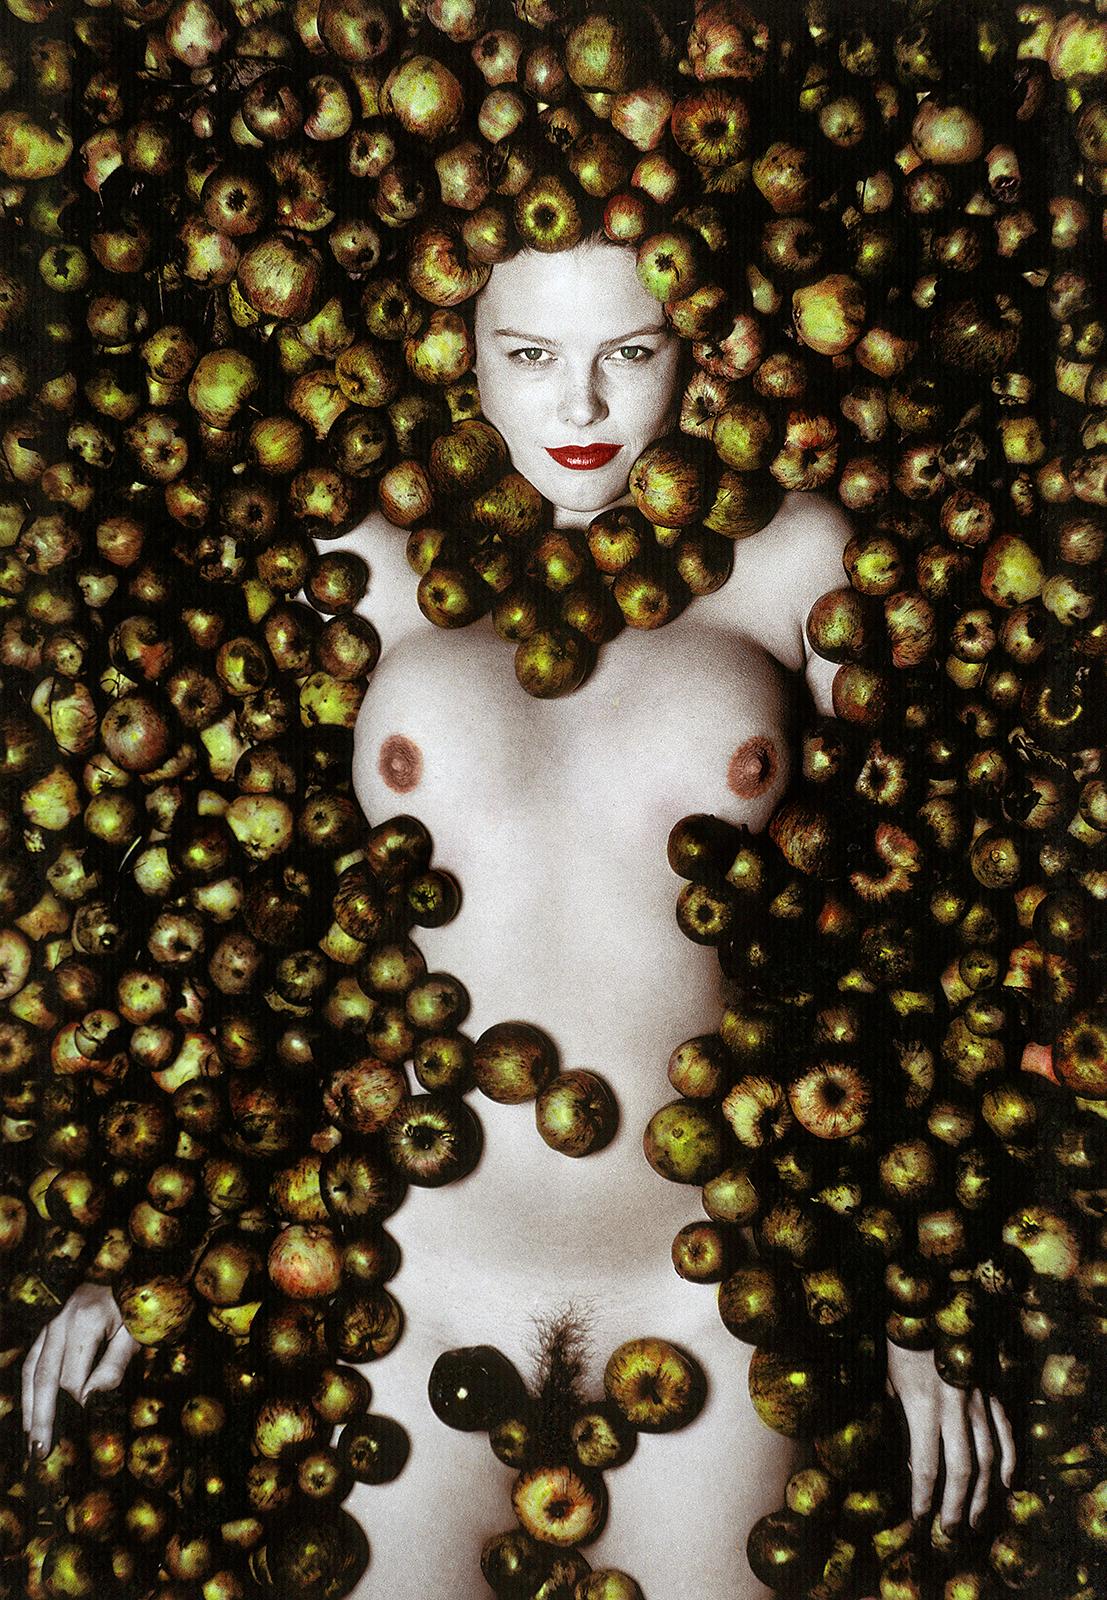 Signierter Kunstdruck in limitierter Auflage, Porträt wie ein Stillleben, Apfel (Schwarz), Color Photograph, von Ian Sanderson